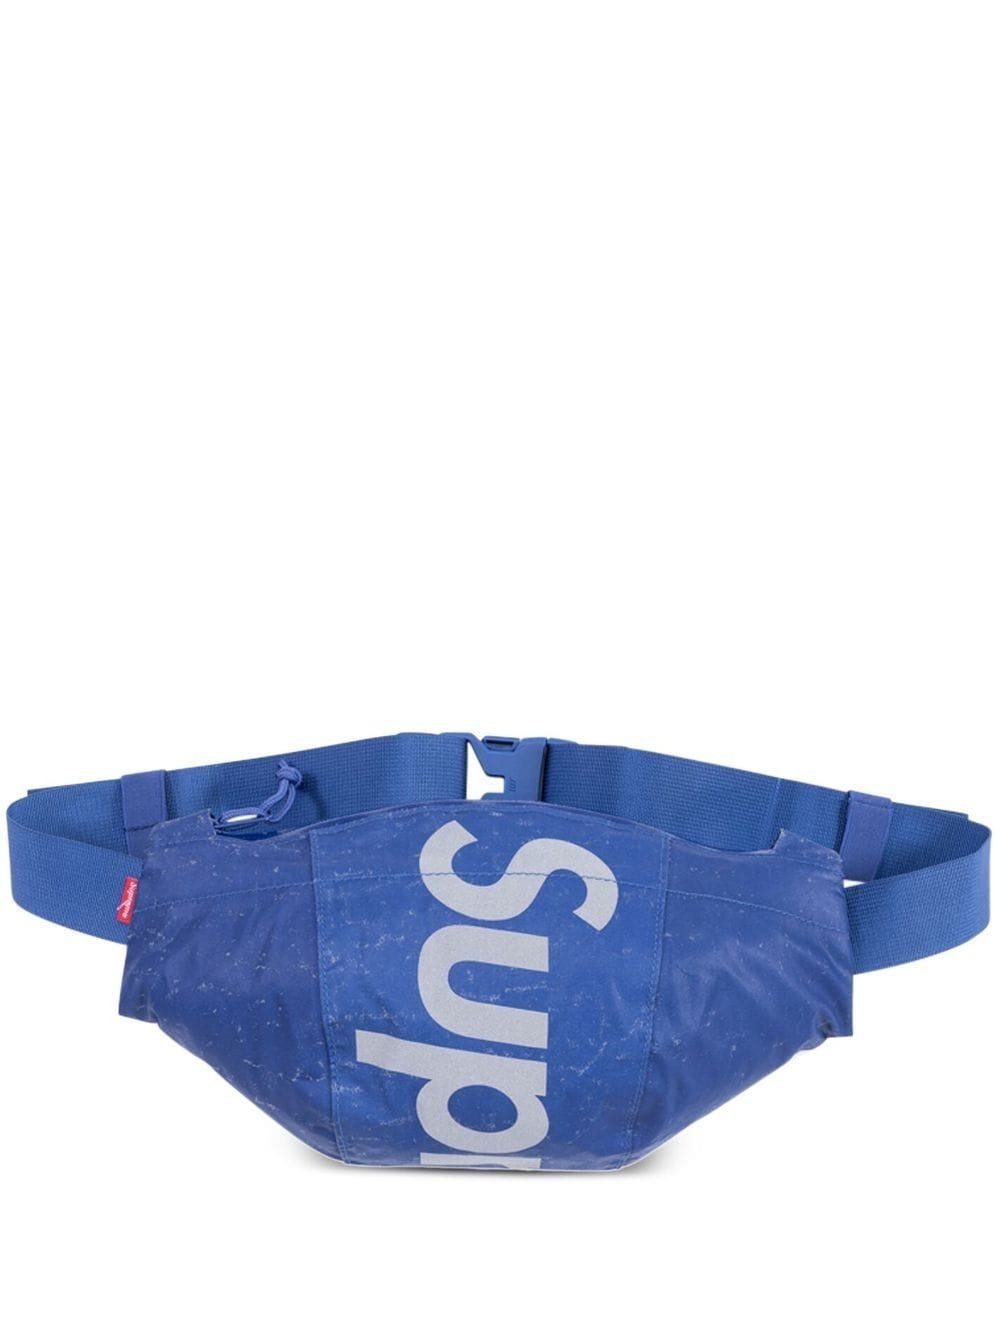 reflective speckled belt bag - 1